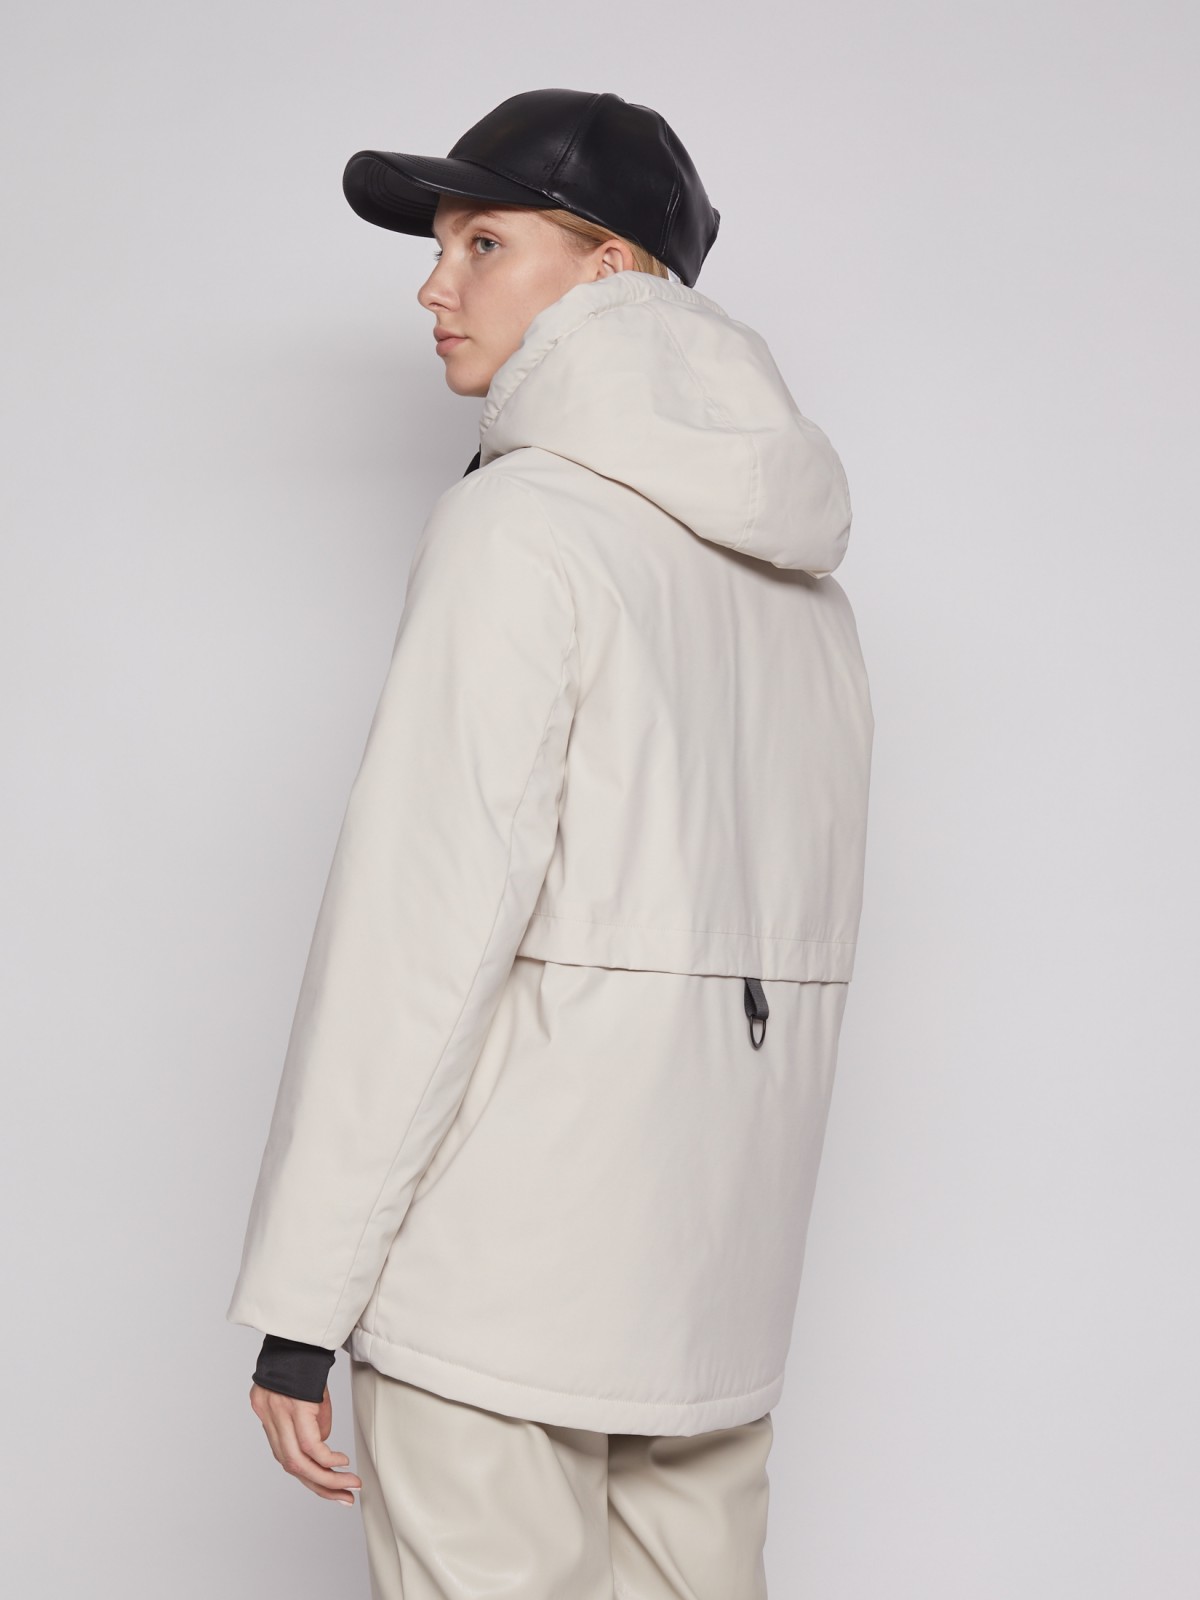 Утеплённая куртка с капюшоном zolla 022125102184, цвет молоко, размер XS - фото 5